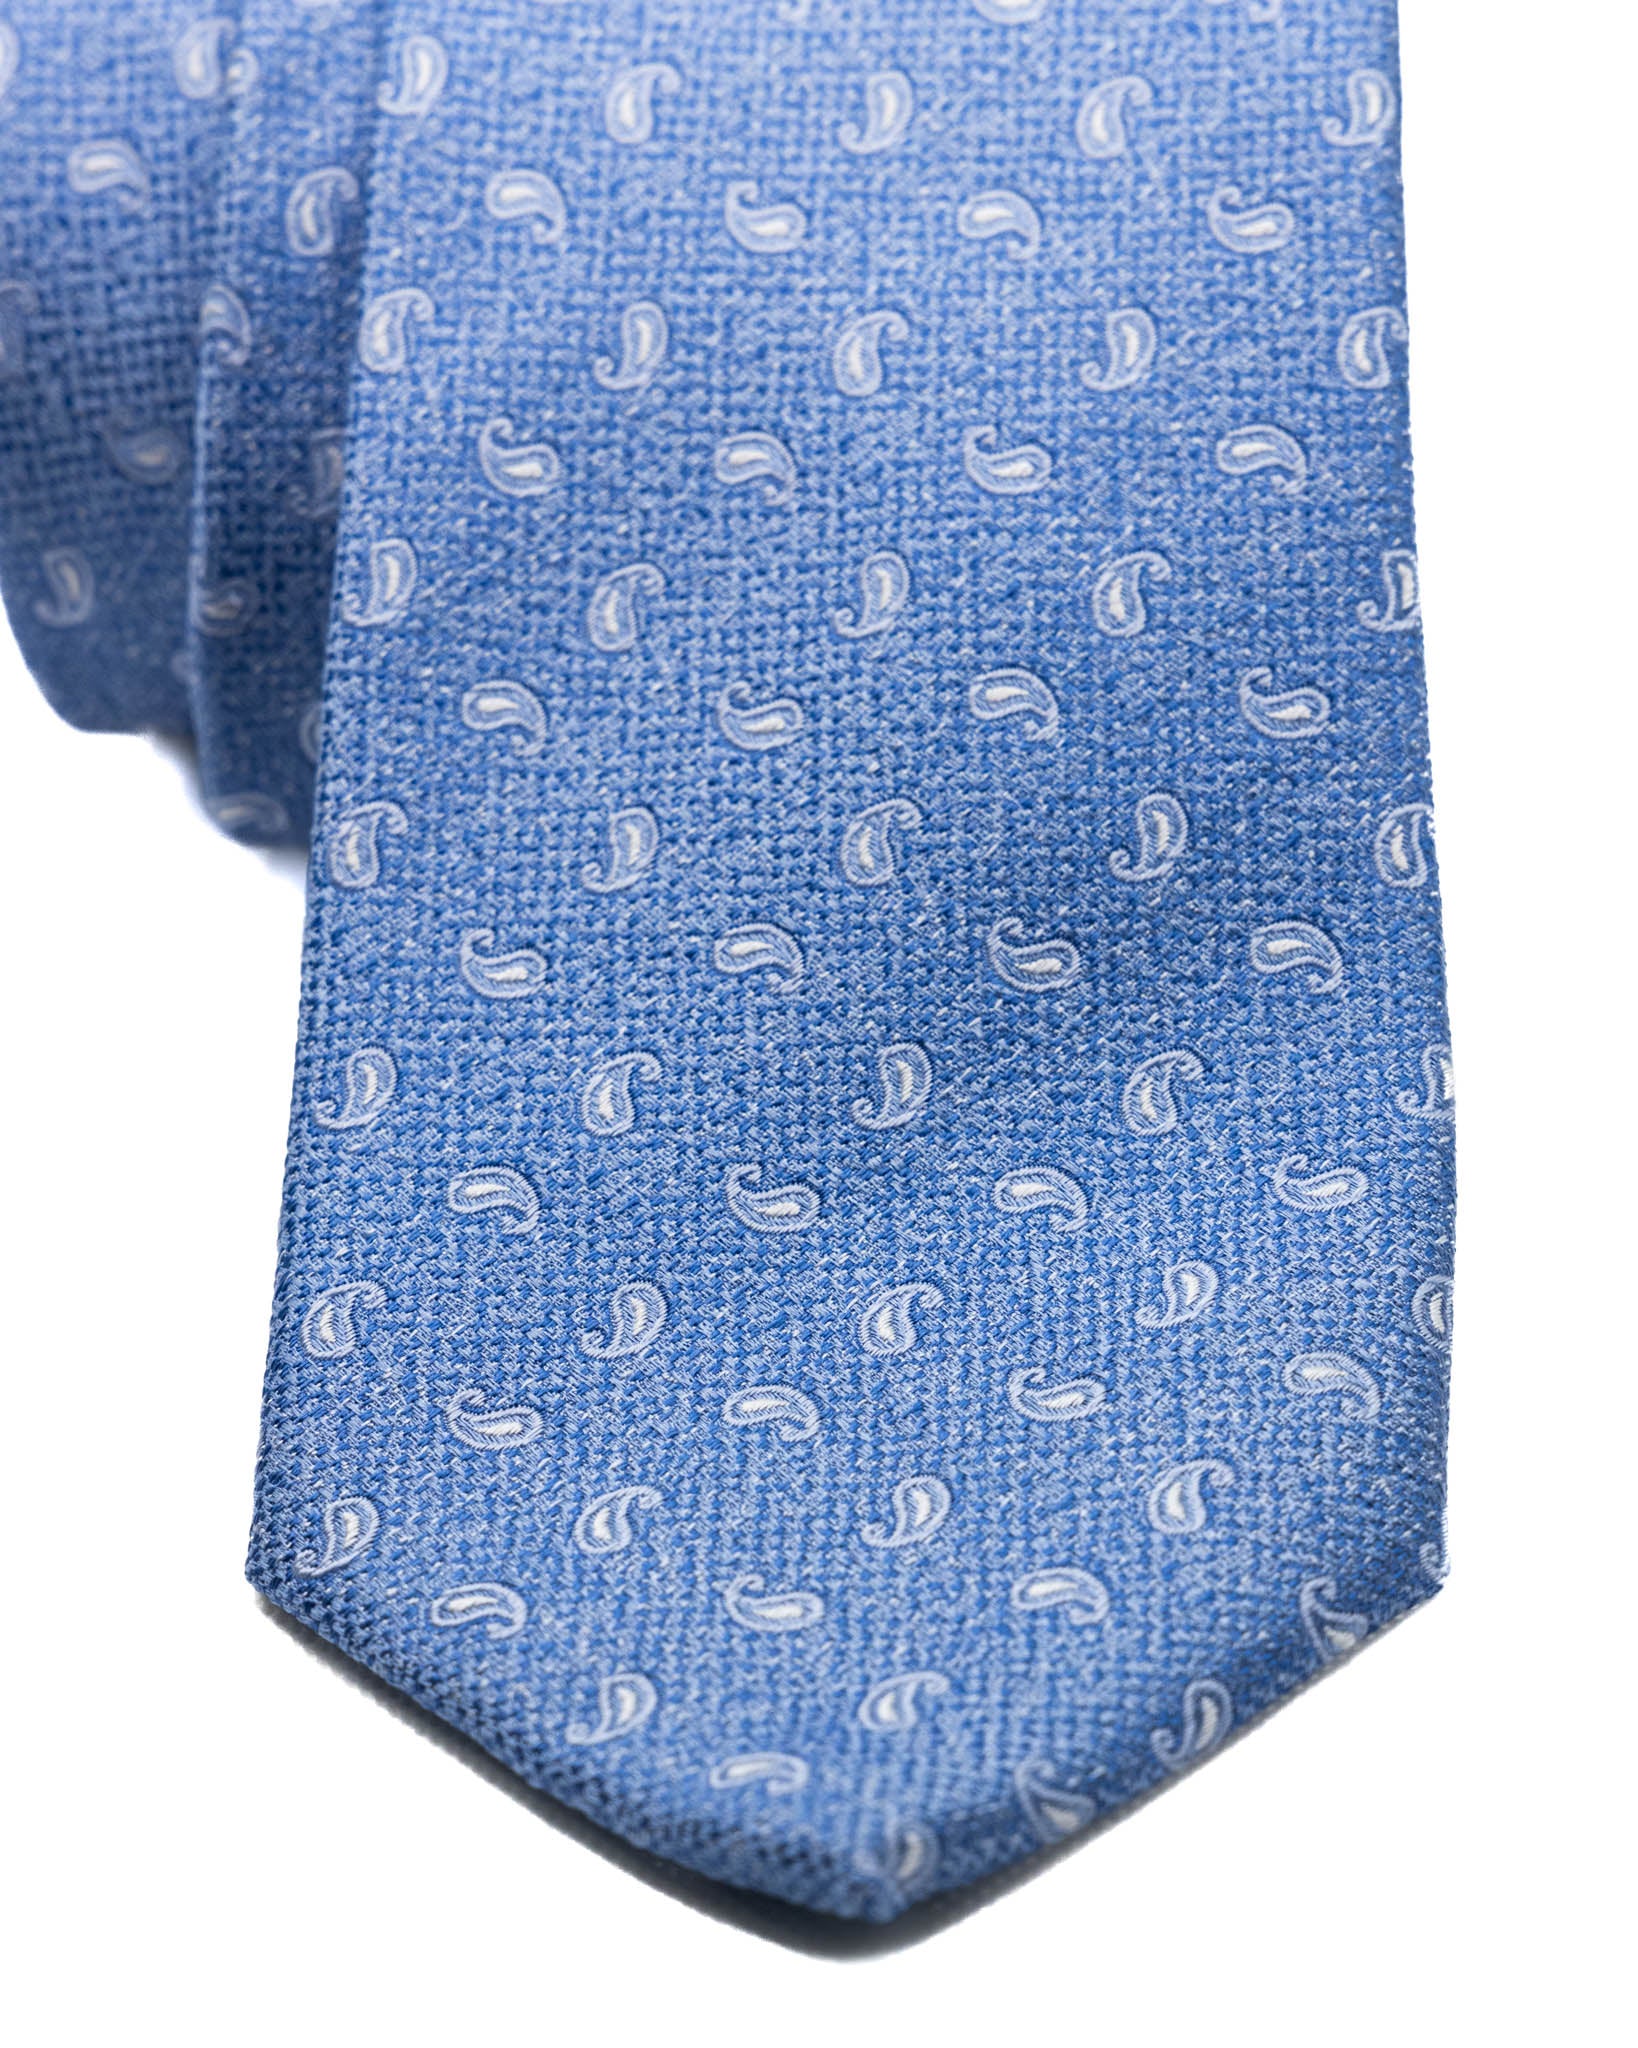 Cravatta - in seta azzurra paisley in rilievo